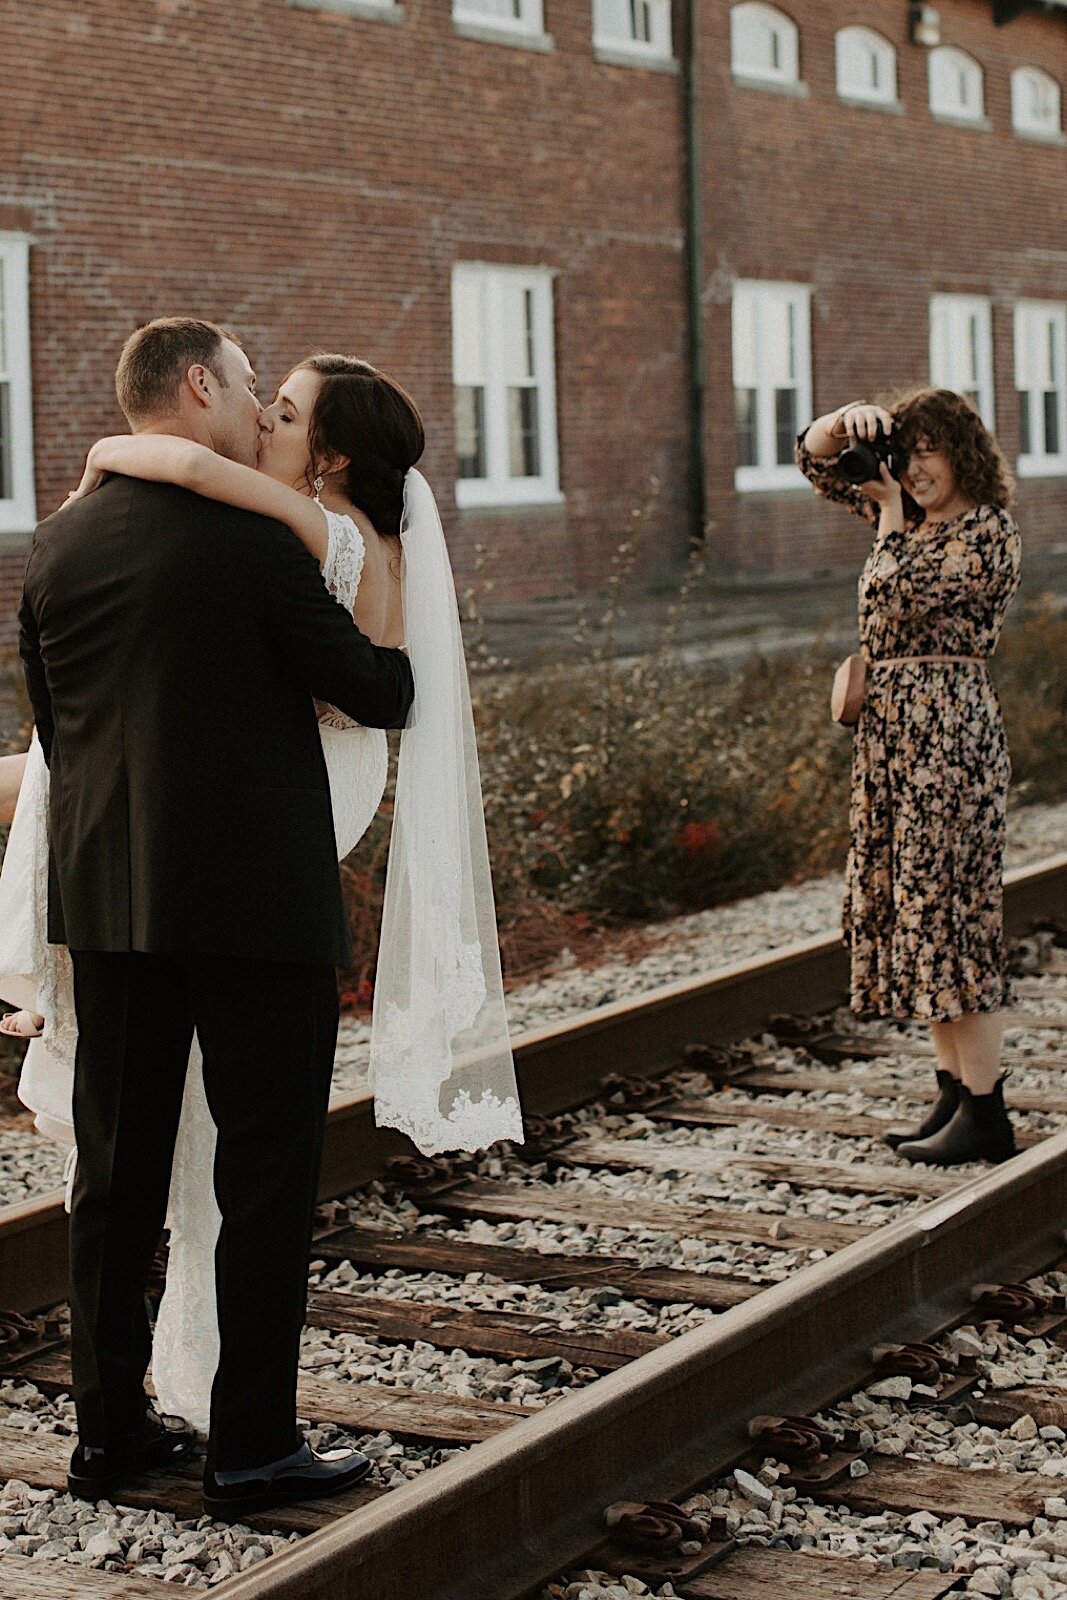 26_CORYNANDJOSEPH-2019-bts-madelinerosephotographyco-2_behind_the_scenes_wedding_photography_2019.jpg